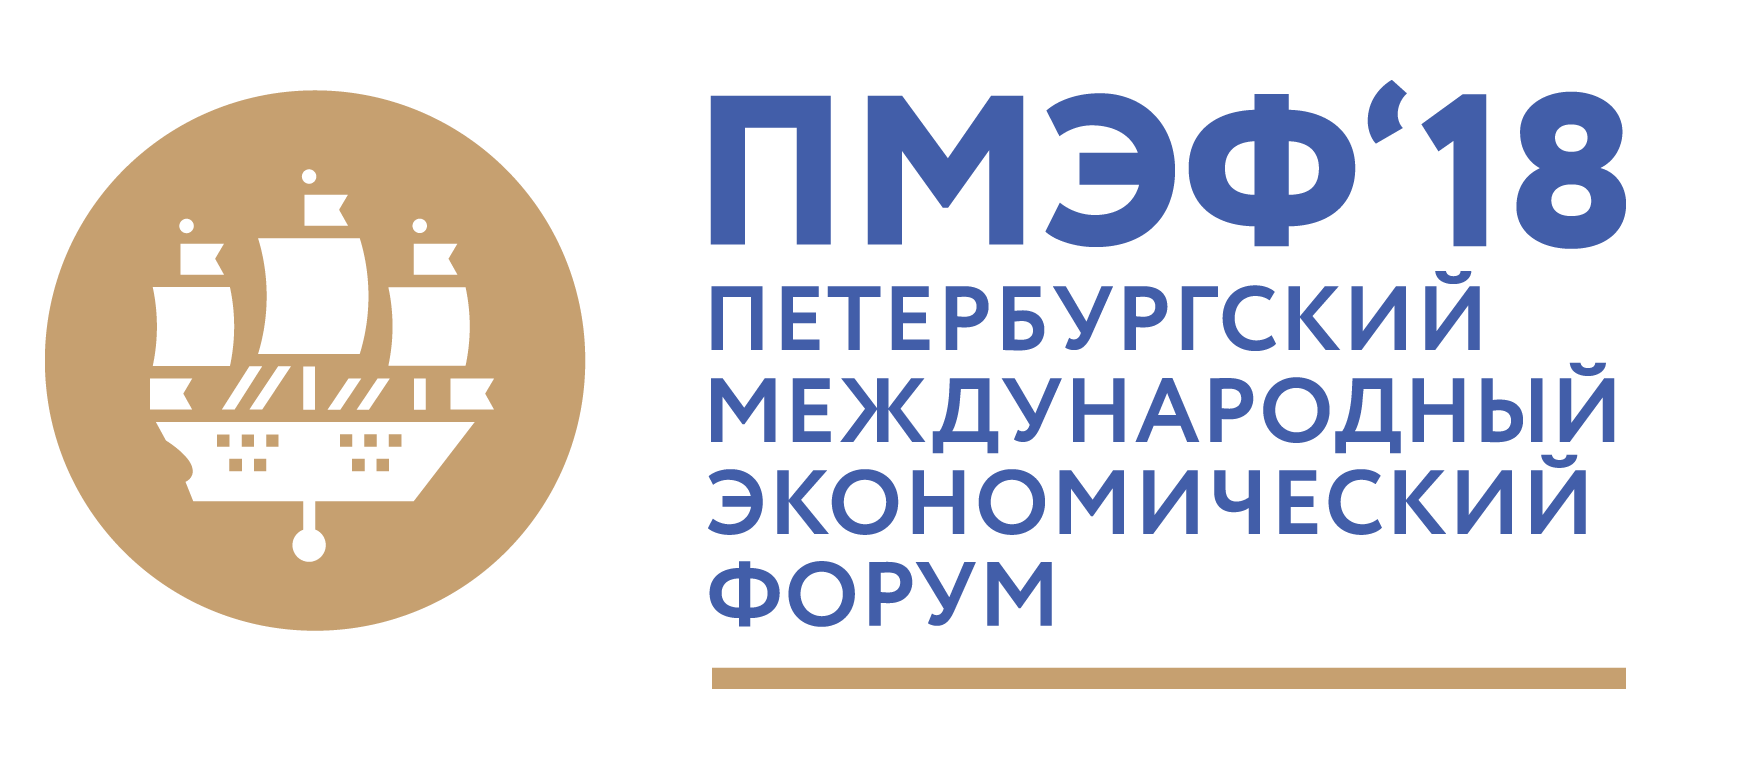 Президент компании ООО «ИПО «Ю-ПИТЕР» выступил с докладом на круглом столе в рамках Петербургского международного экономического форума ПМЭФ 2018.  